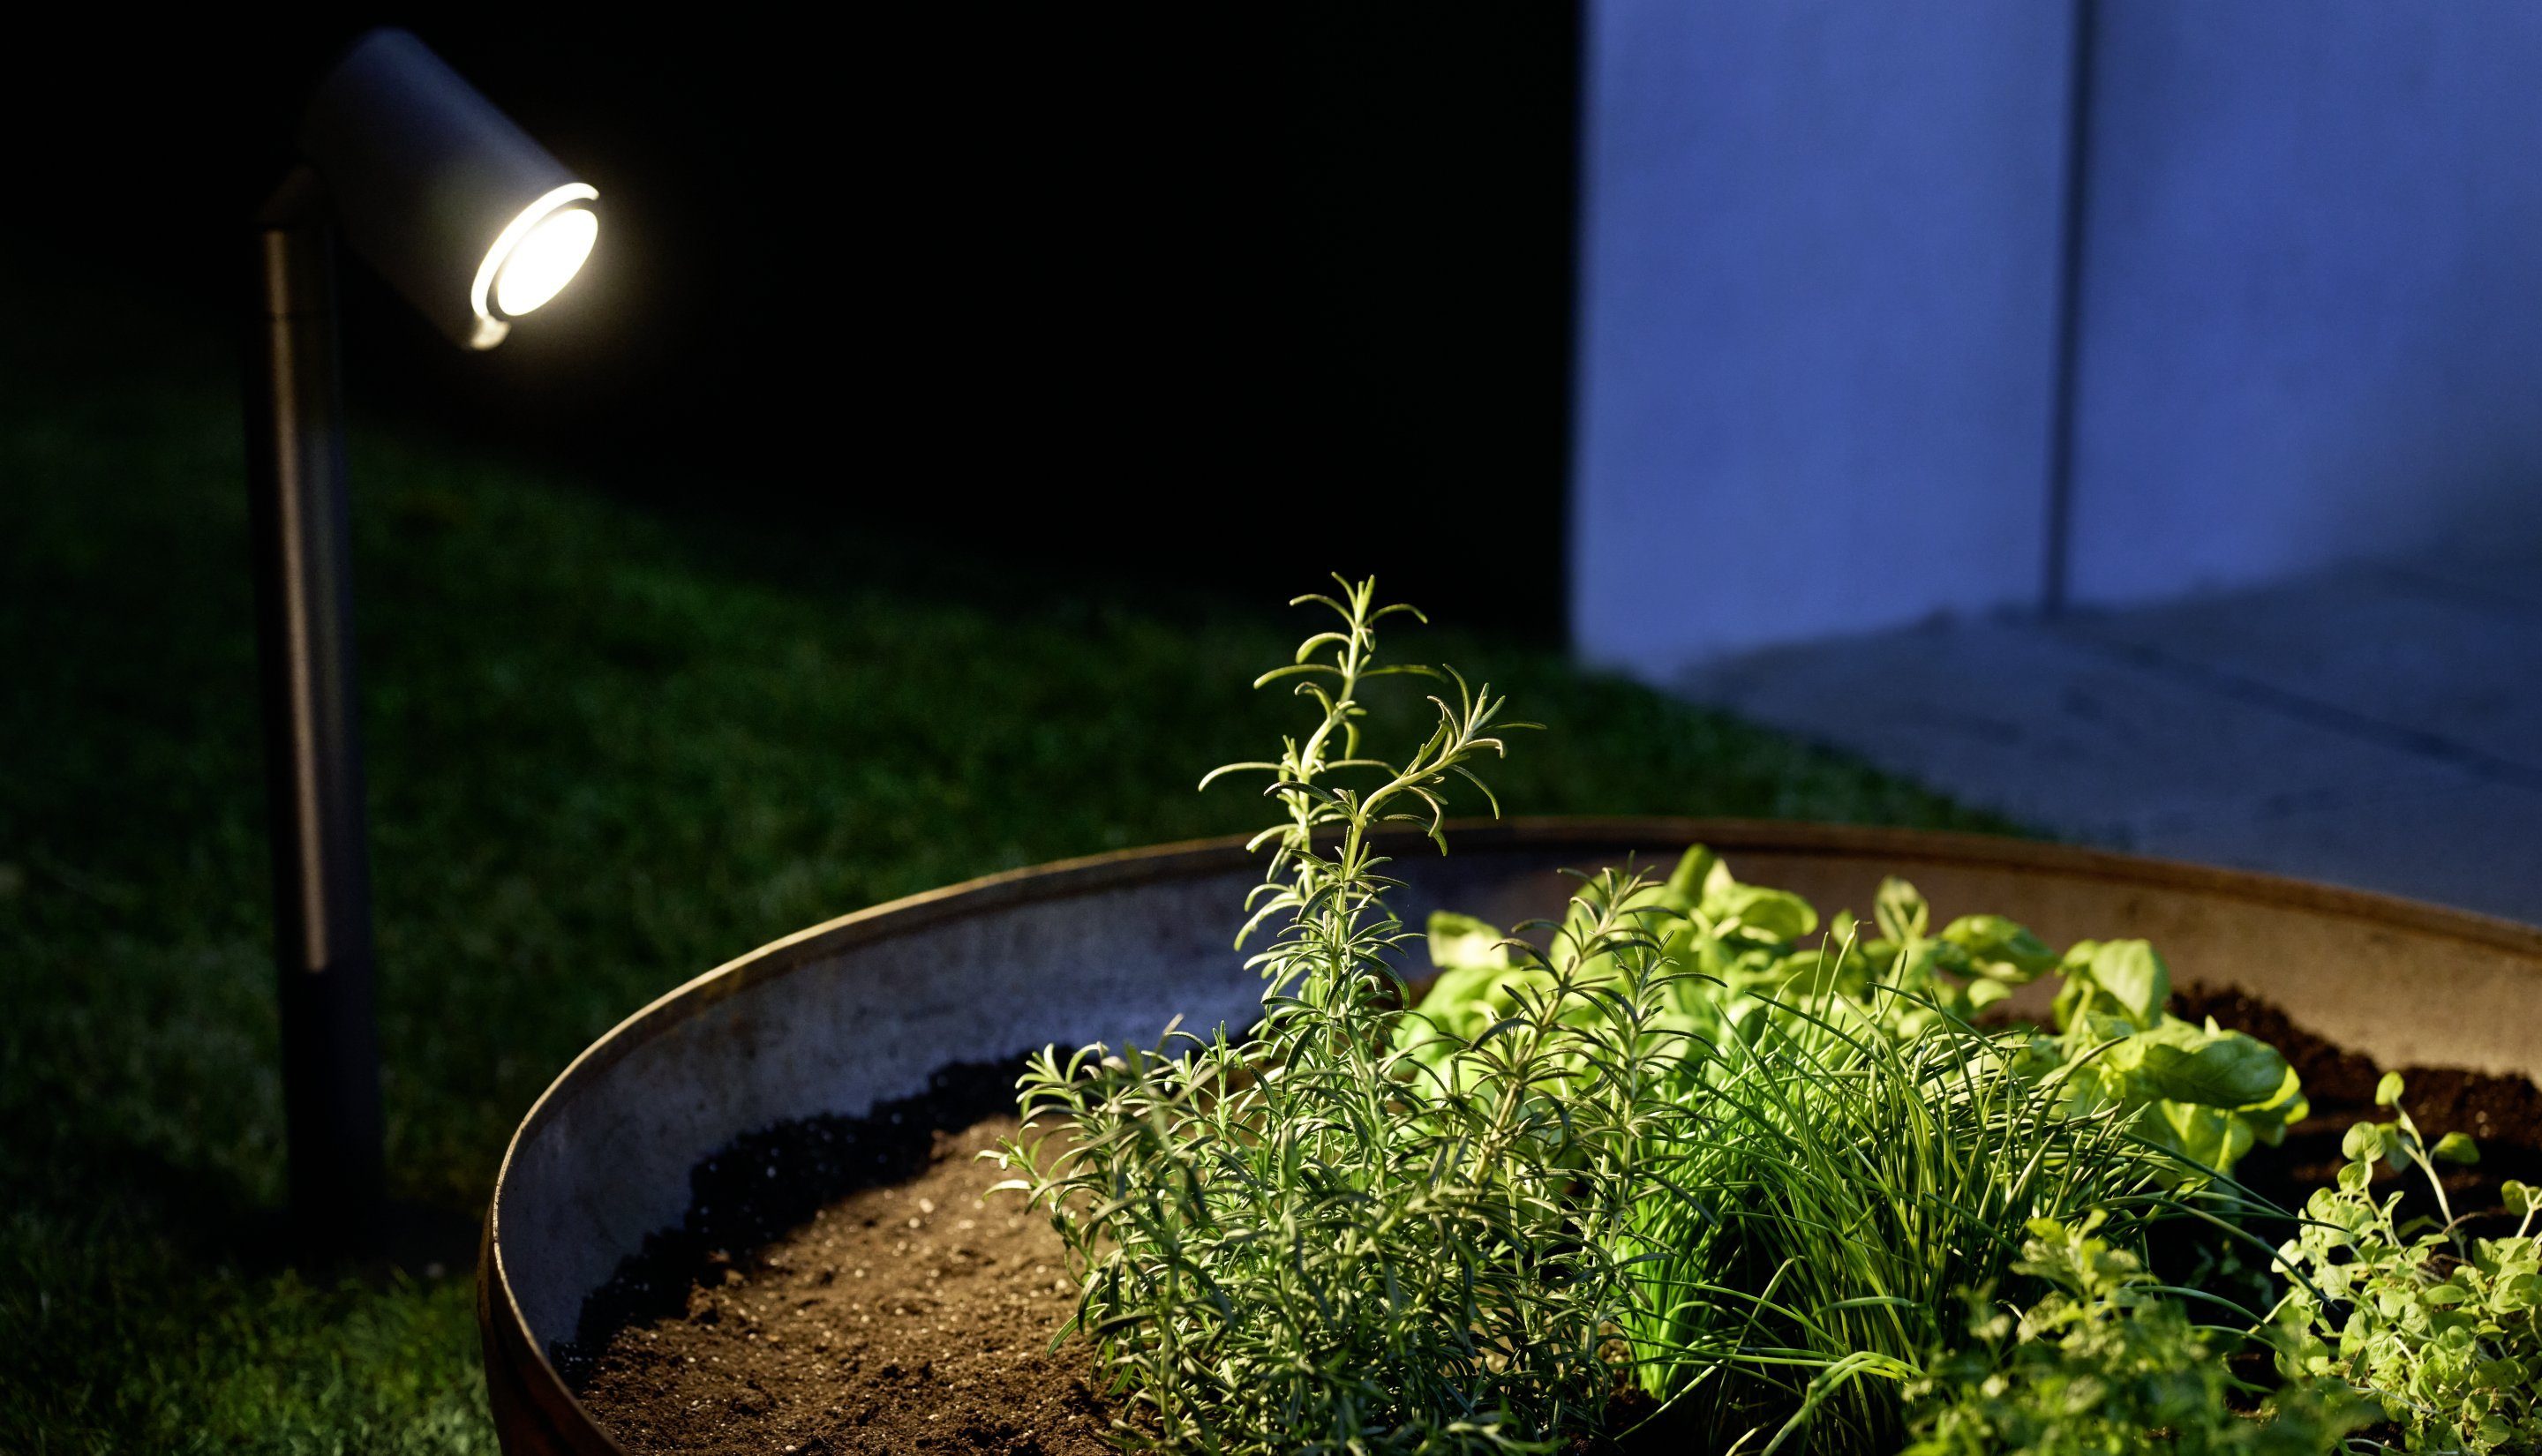 &GU10-Leuchtmittel,schwenkbar,2,5m steinel LED LED Way, wechselbar, Warmweiß, Netzkabel,Warmweiß,WegPollerleuchte Gartenstrahler